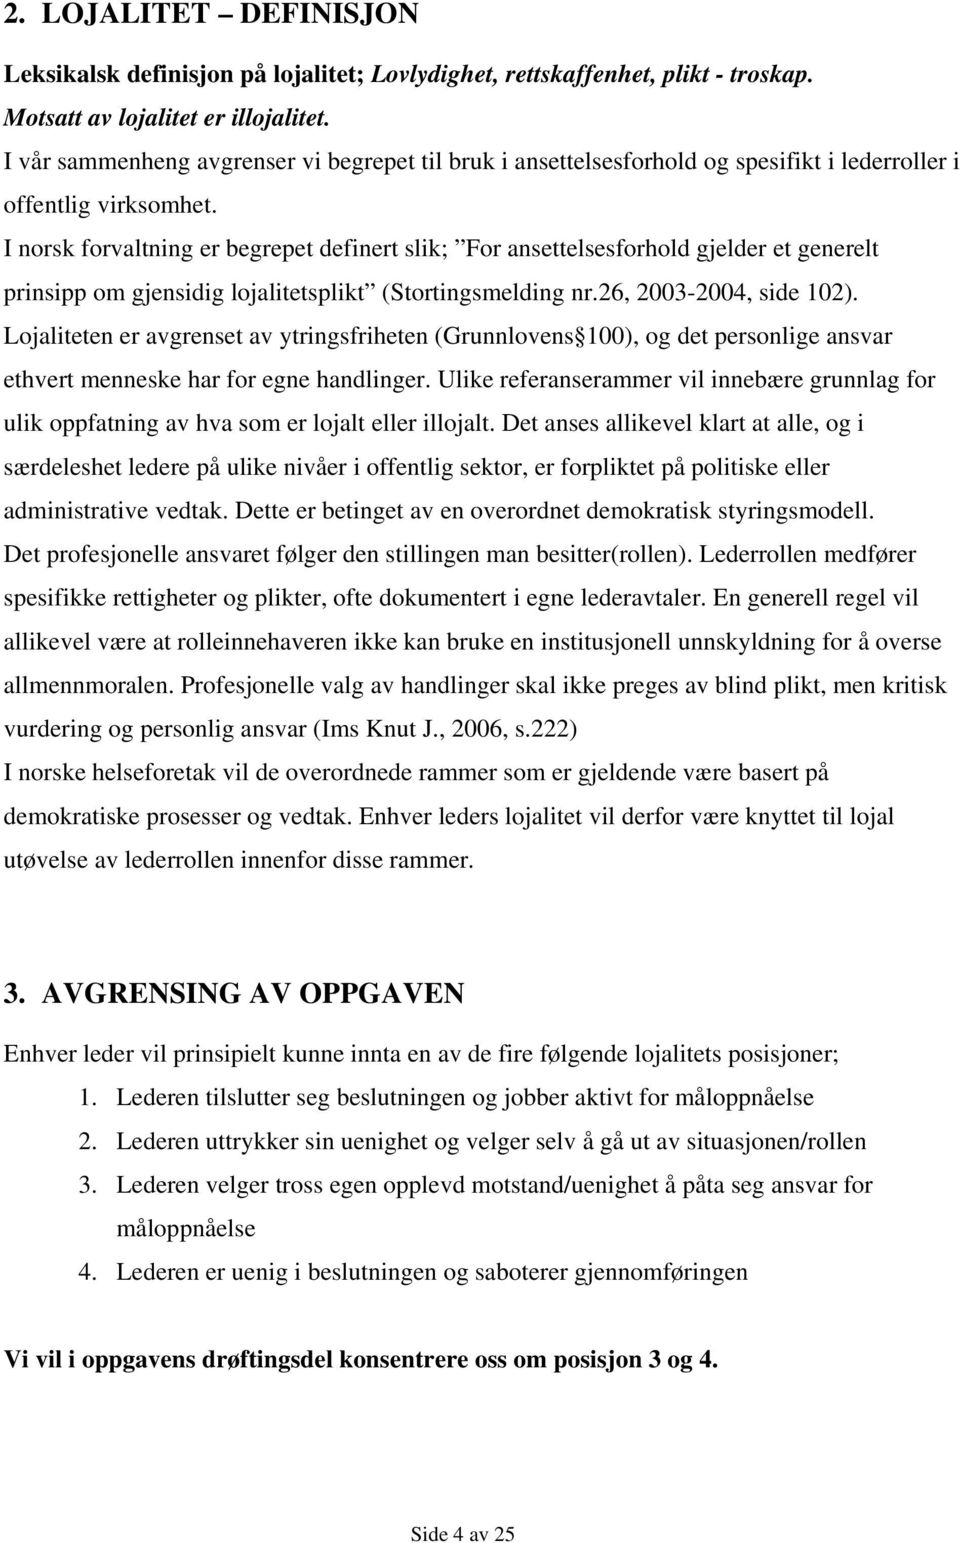 I norsk forvaltning er begrepet definert slik; For ansettelsesforhold gjelder et generelt prinsipp om gjensidig lojalitetsplikt (Stortingsmelding nr.26, 2003-2004, side 102).